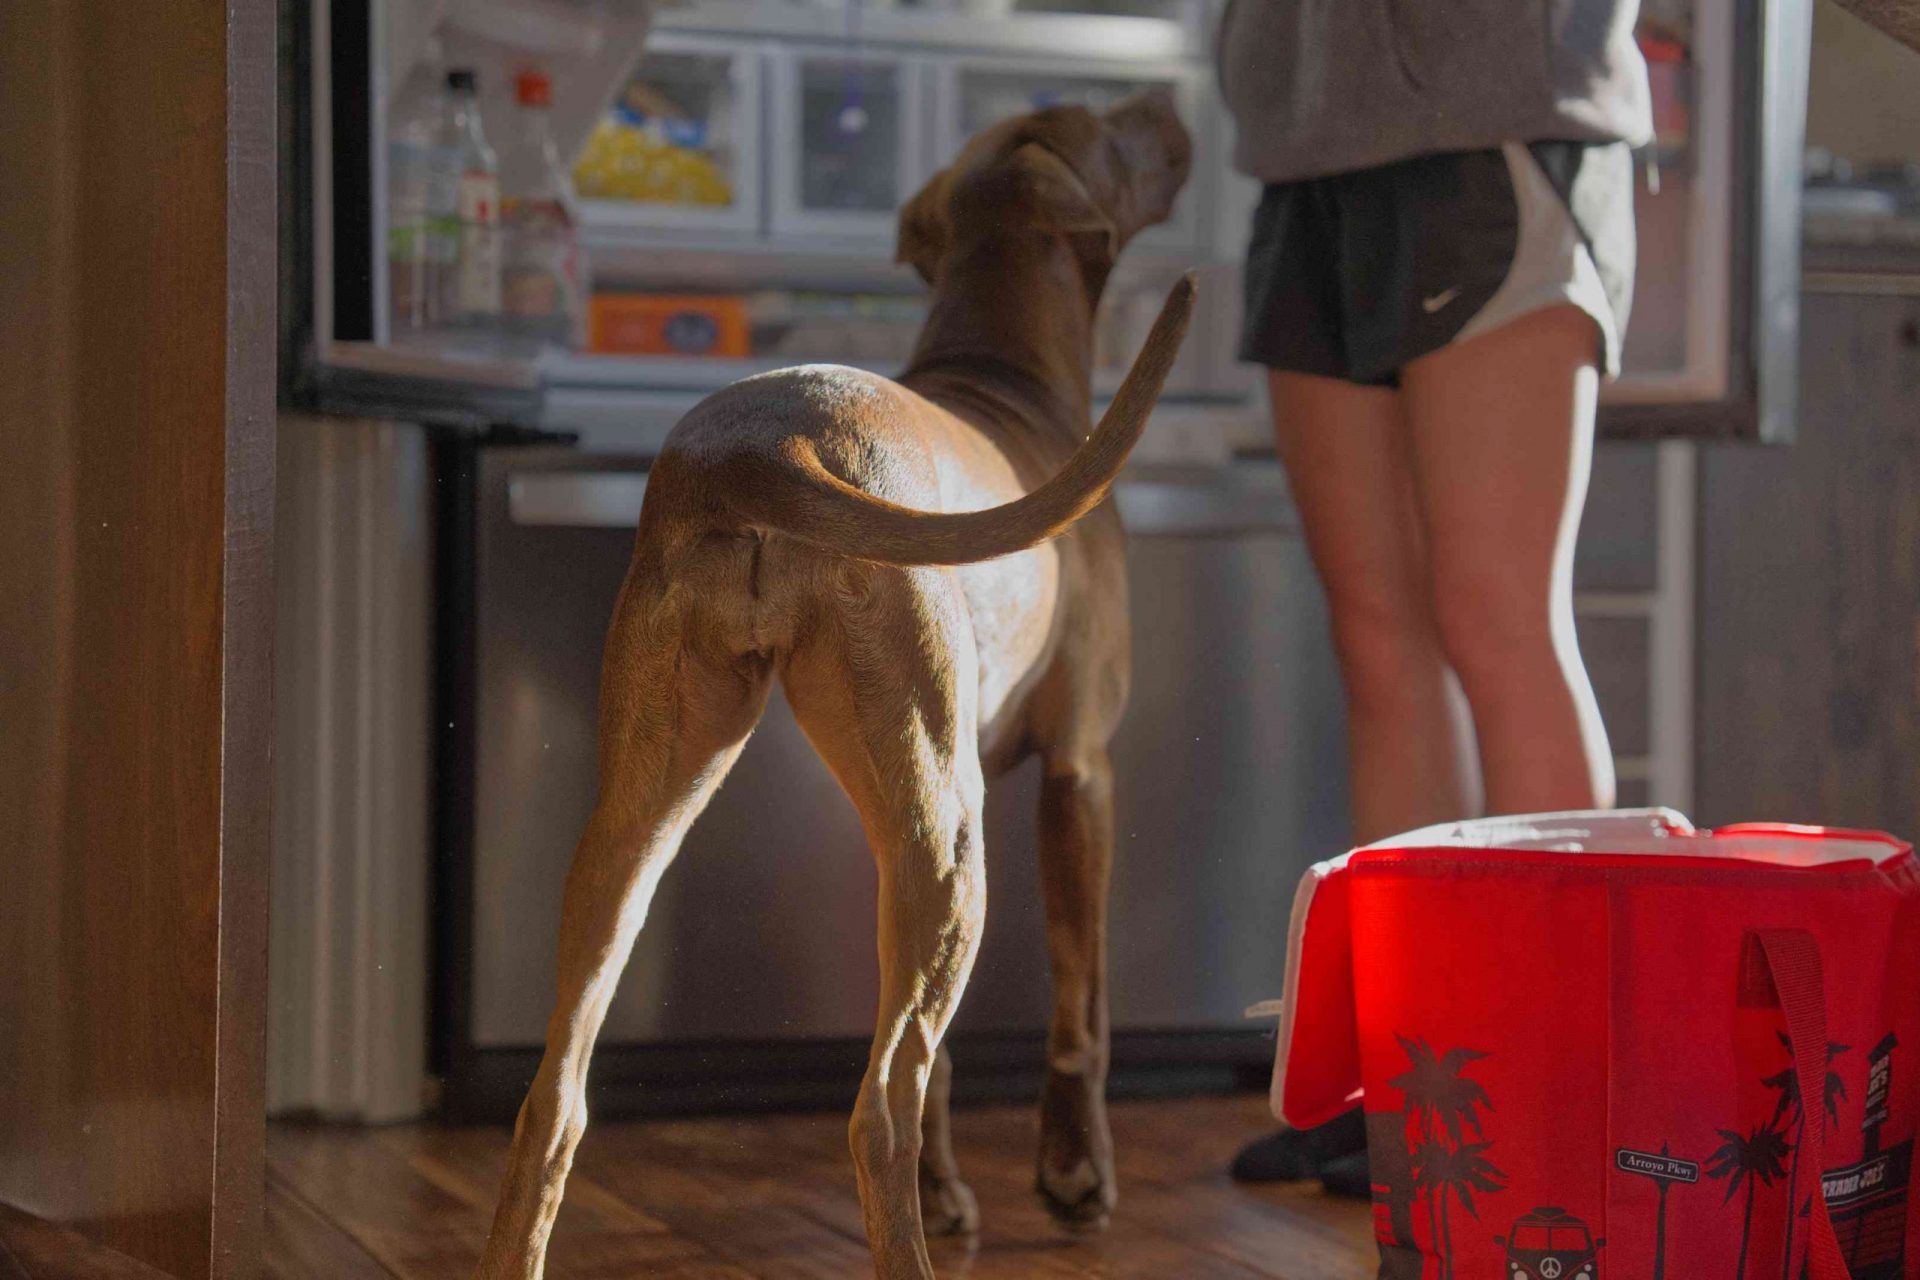 perro alto y atlético de color marrón mueve la cola mientras su dueño abre la puerta de la nevera